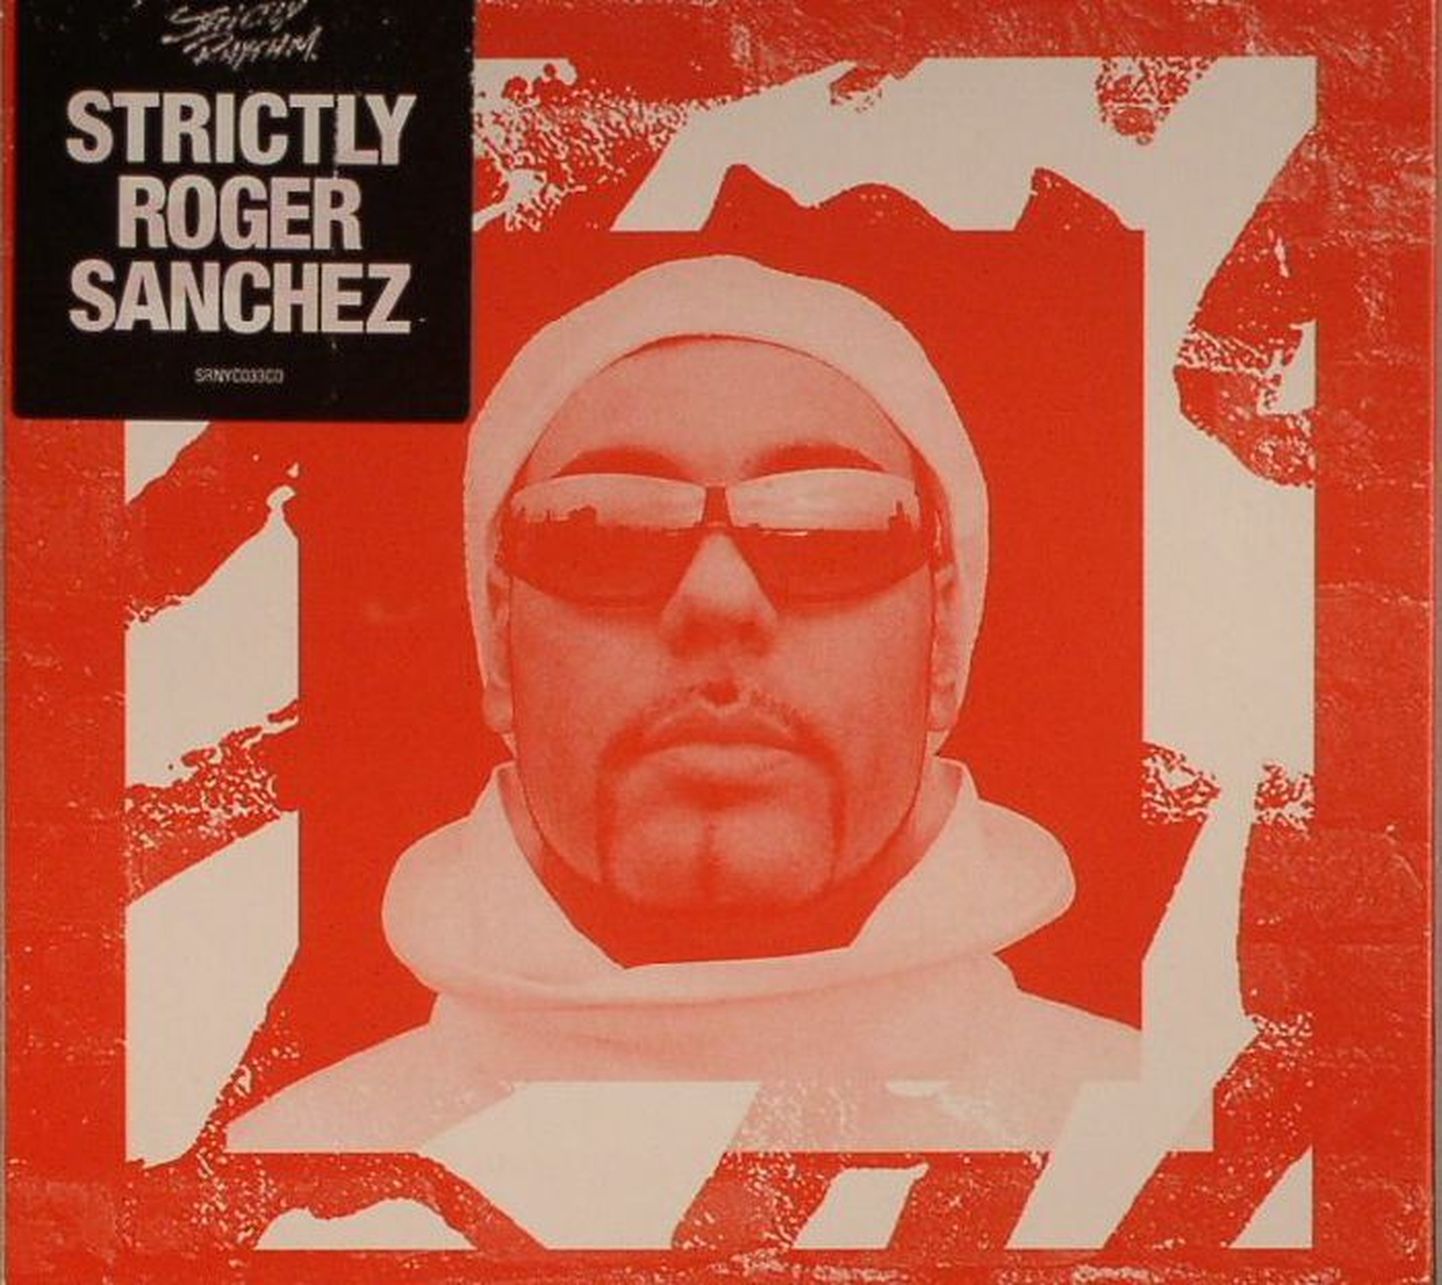 Roger Sanchez- Strictly Roger Sanchez